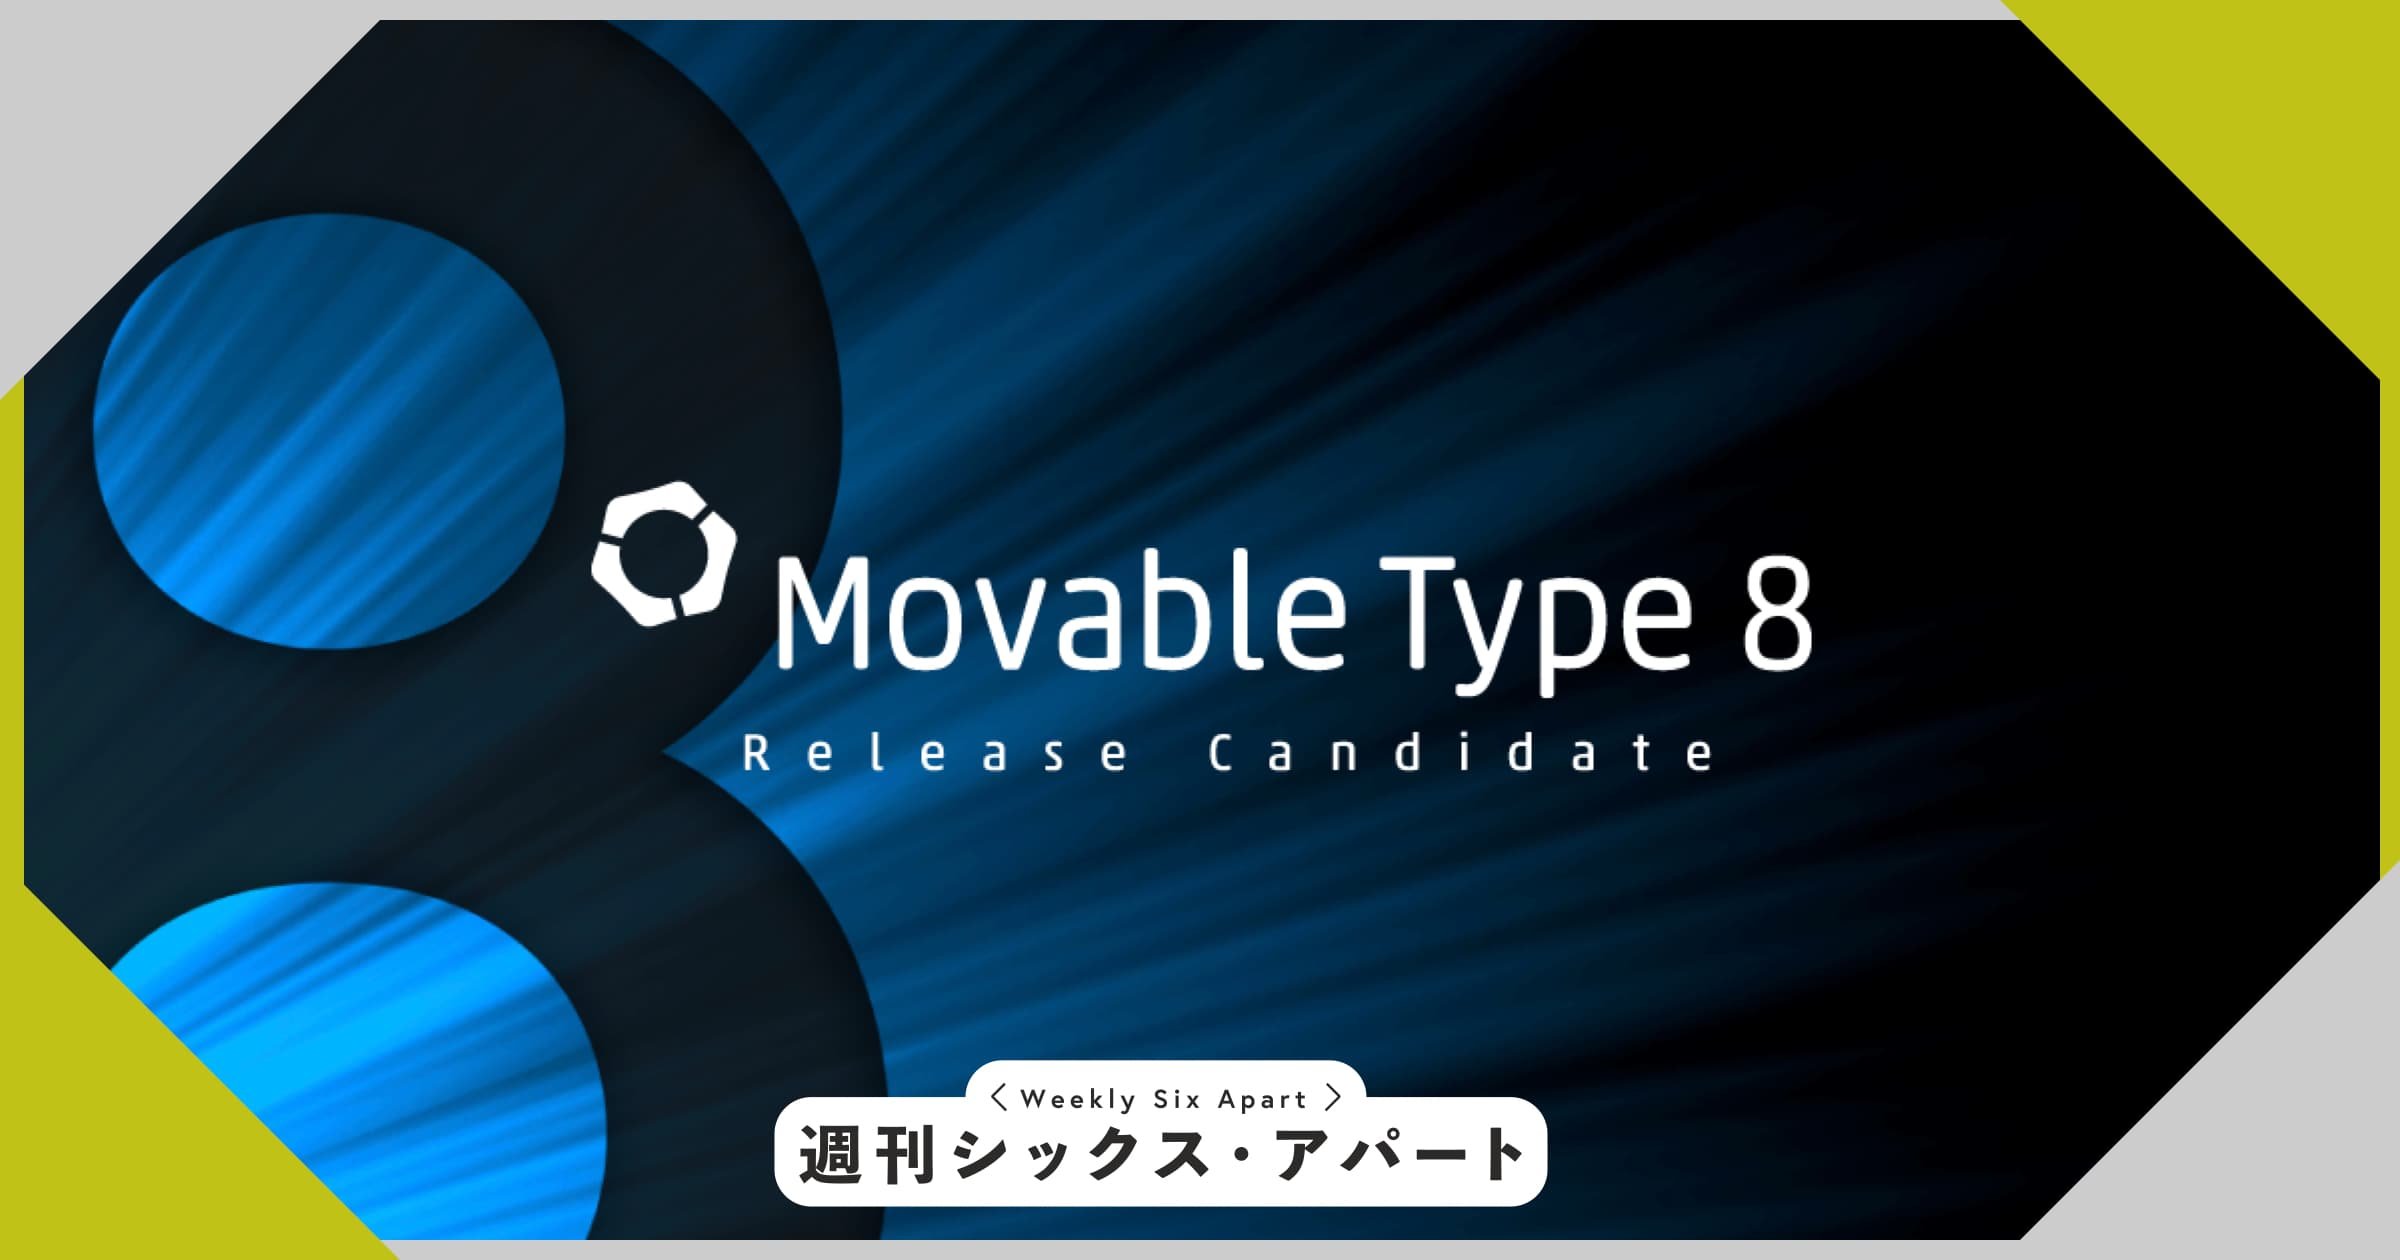 Movable Type 8 リリース候補版を公開しました #週刊SA